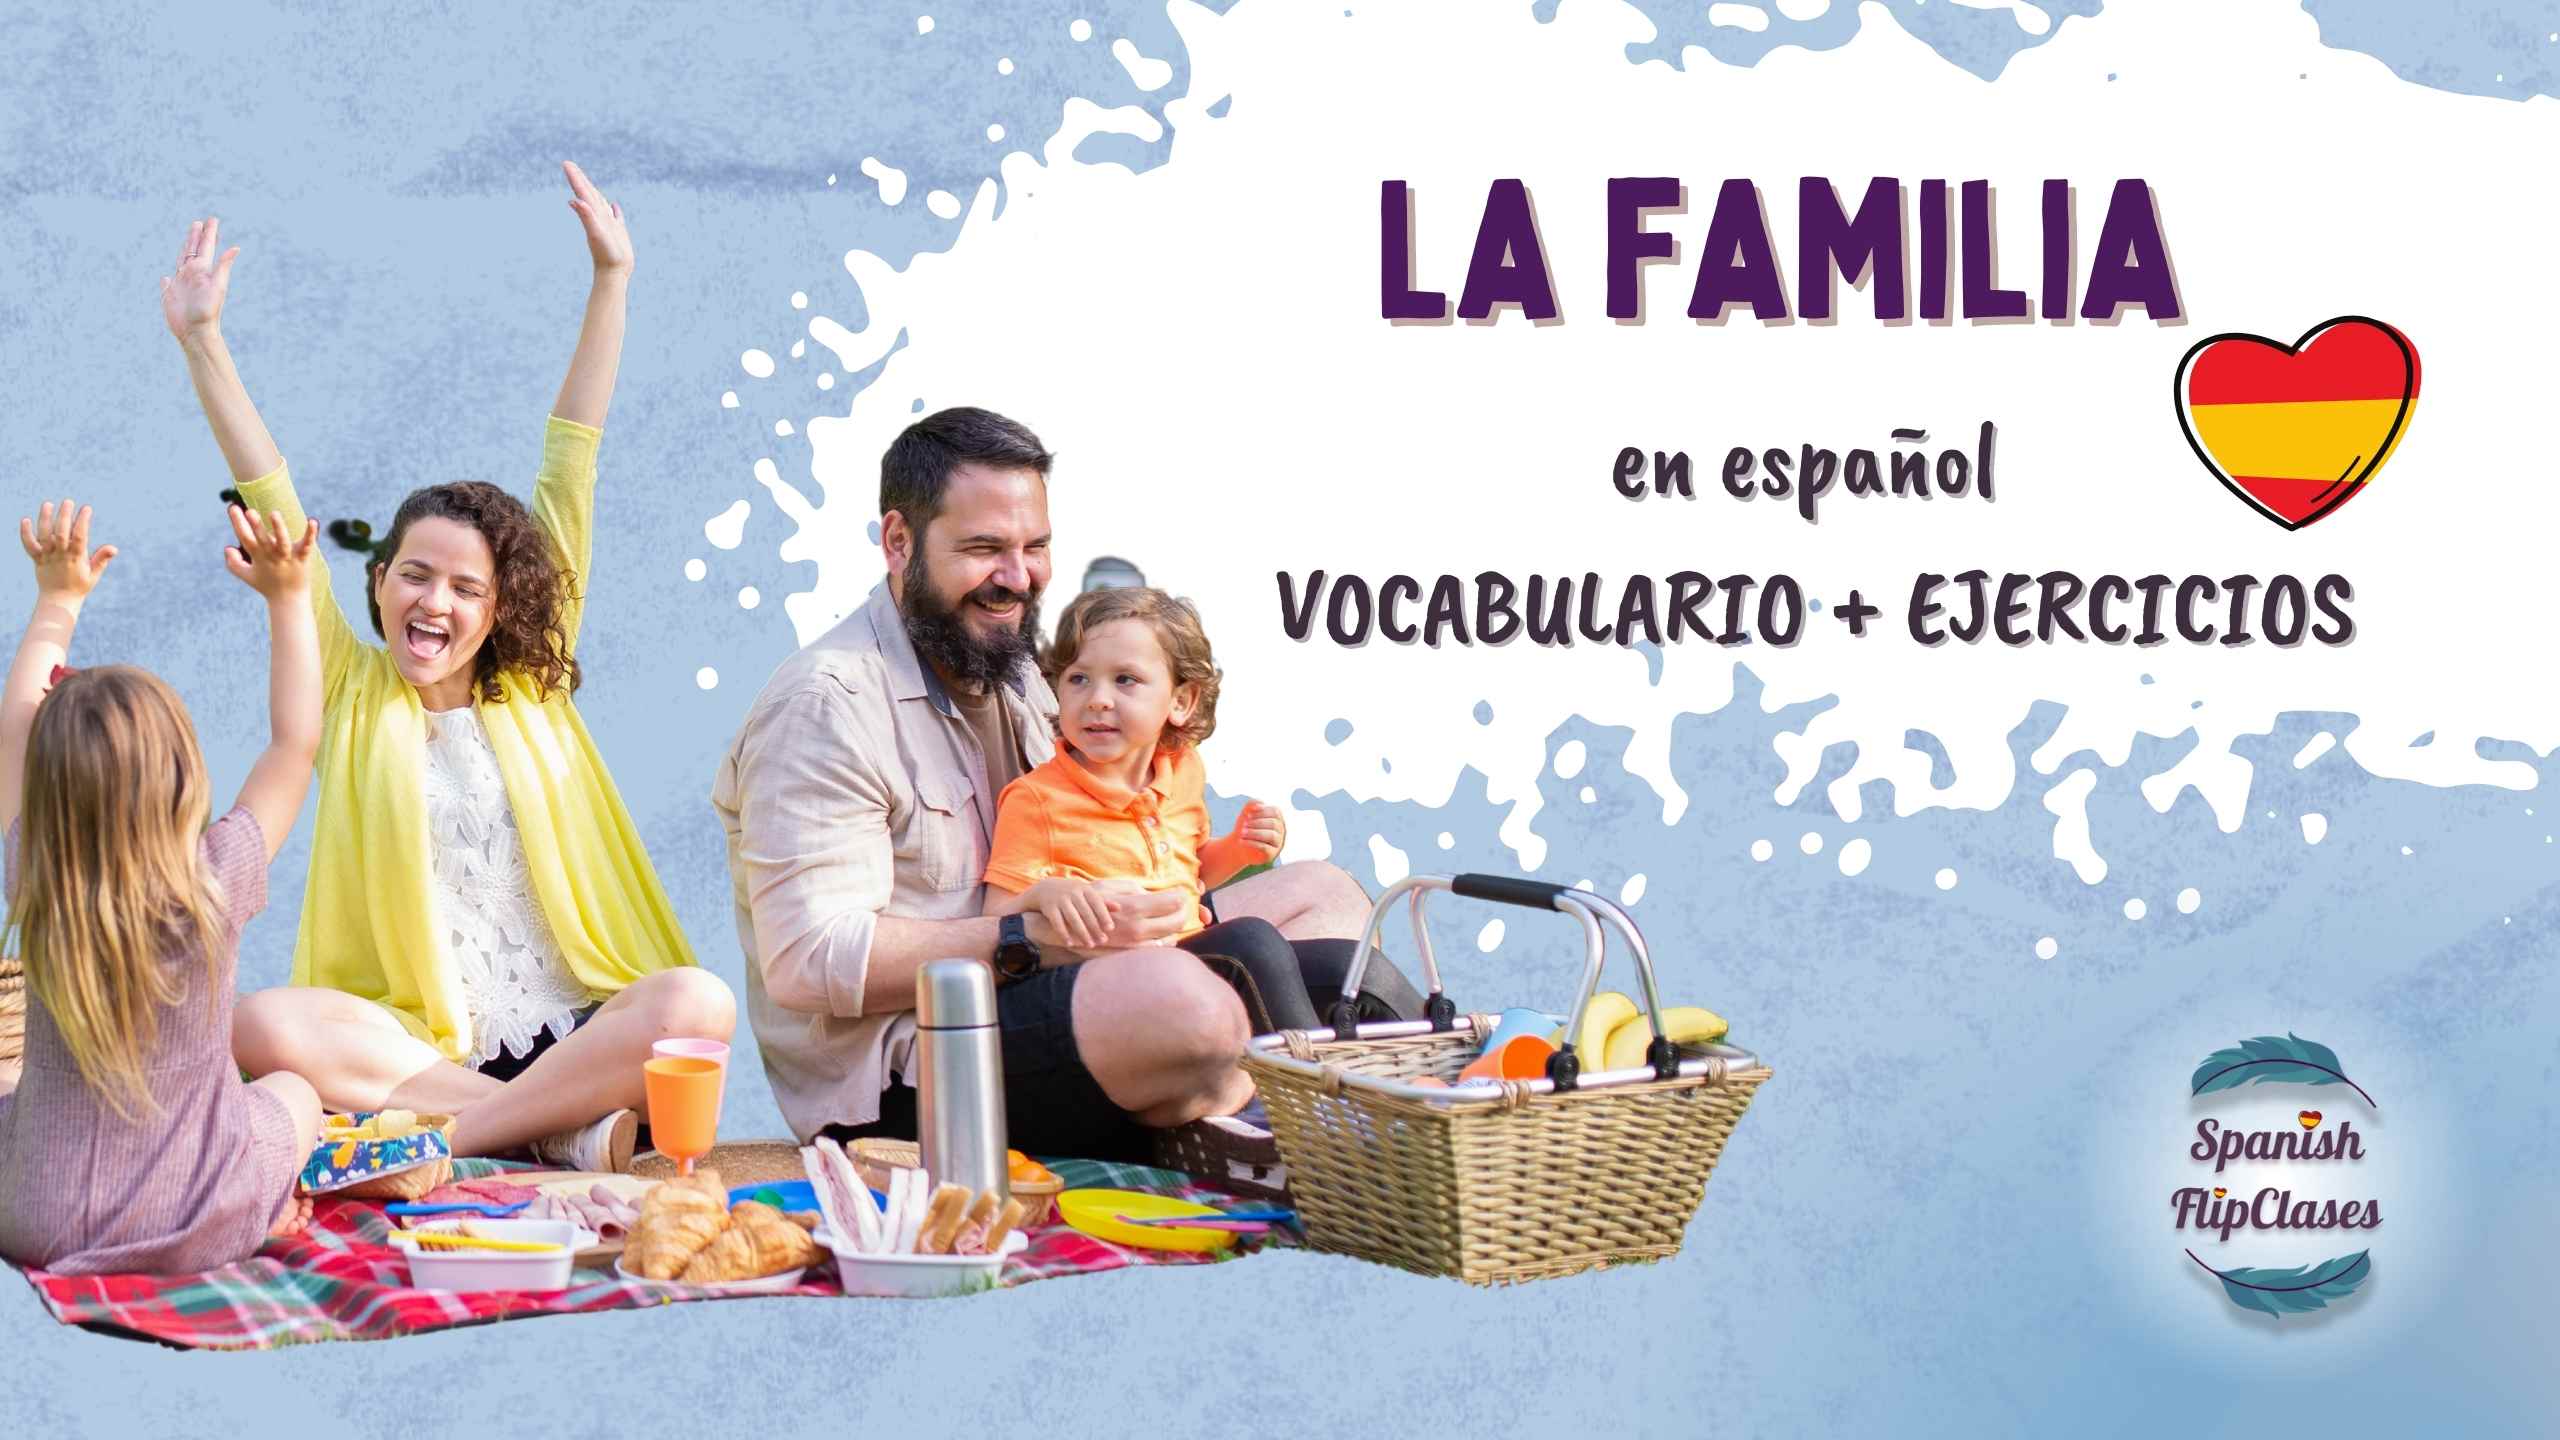 La familia en español